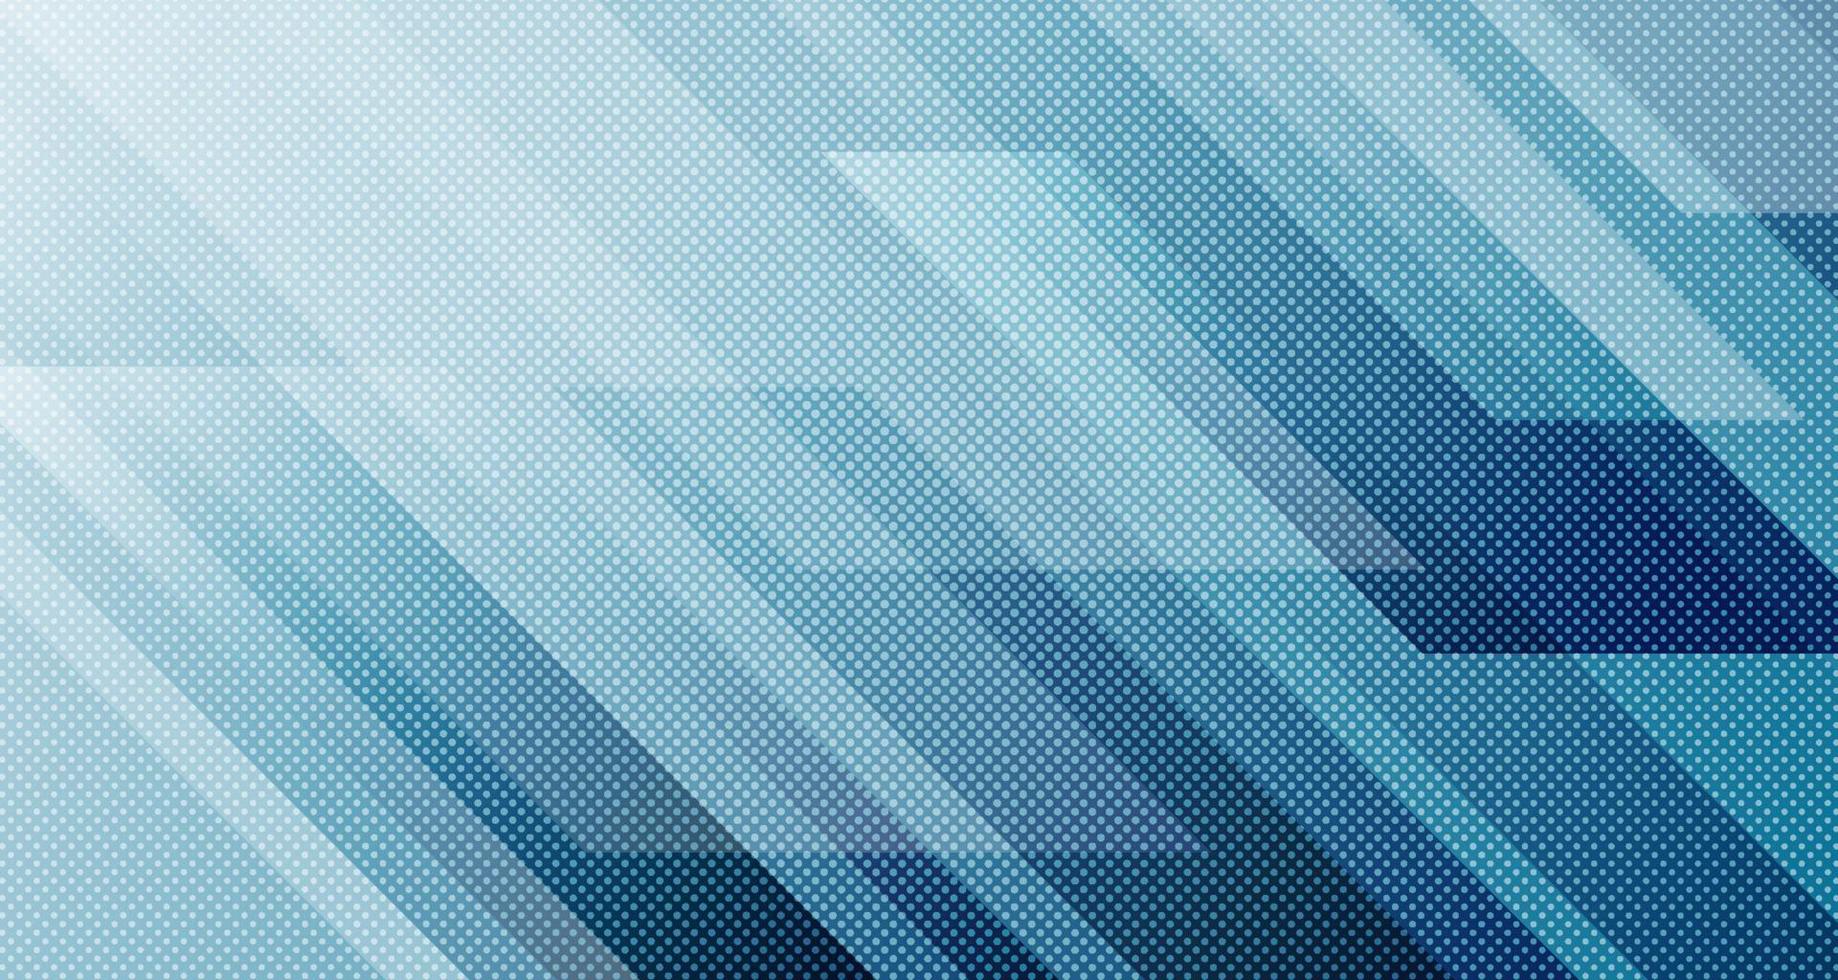 couche de chevauchement de fond abstrait géométrique bleu sur un espace sombre avec décoration de lignes diagonales. élément de conception graphique moderne style rayé pour bannière, dépliant, carte, couverture de brochure ou page de destination vecteur